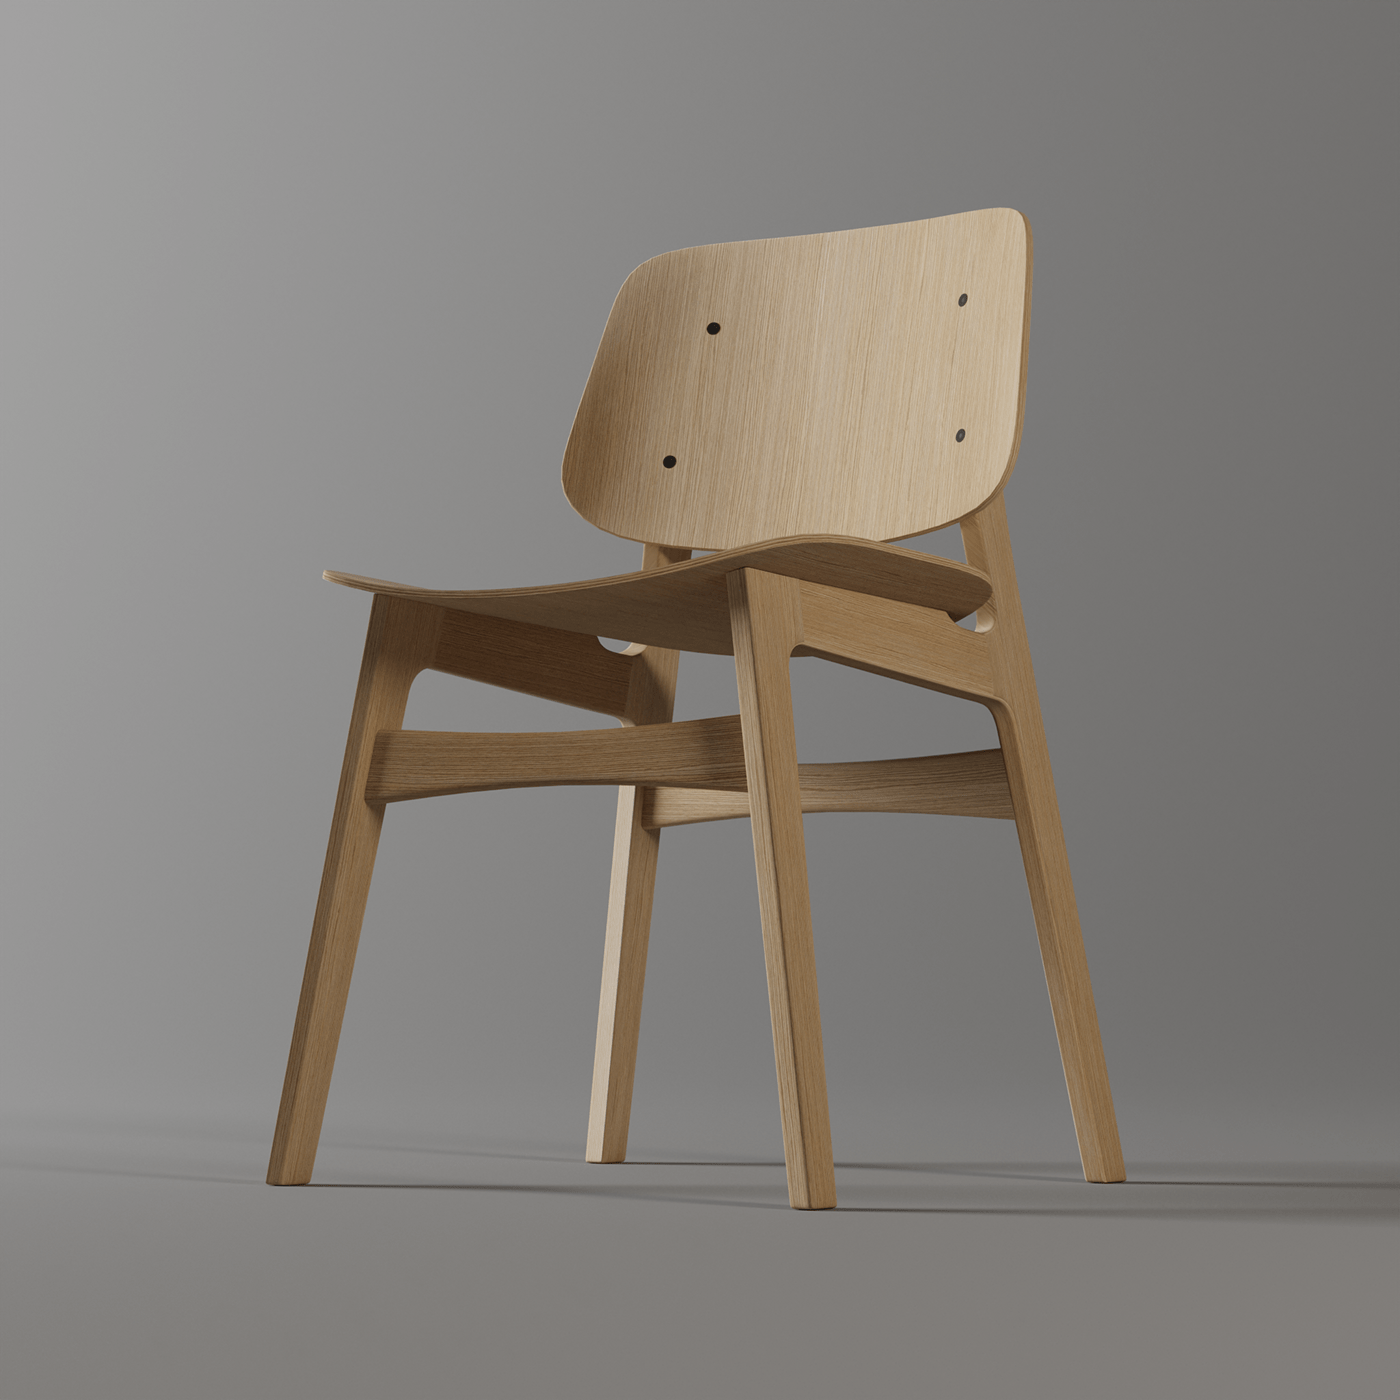 3D 3d modeling blender blender3d chair design furniture product product design  wood